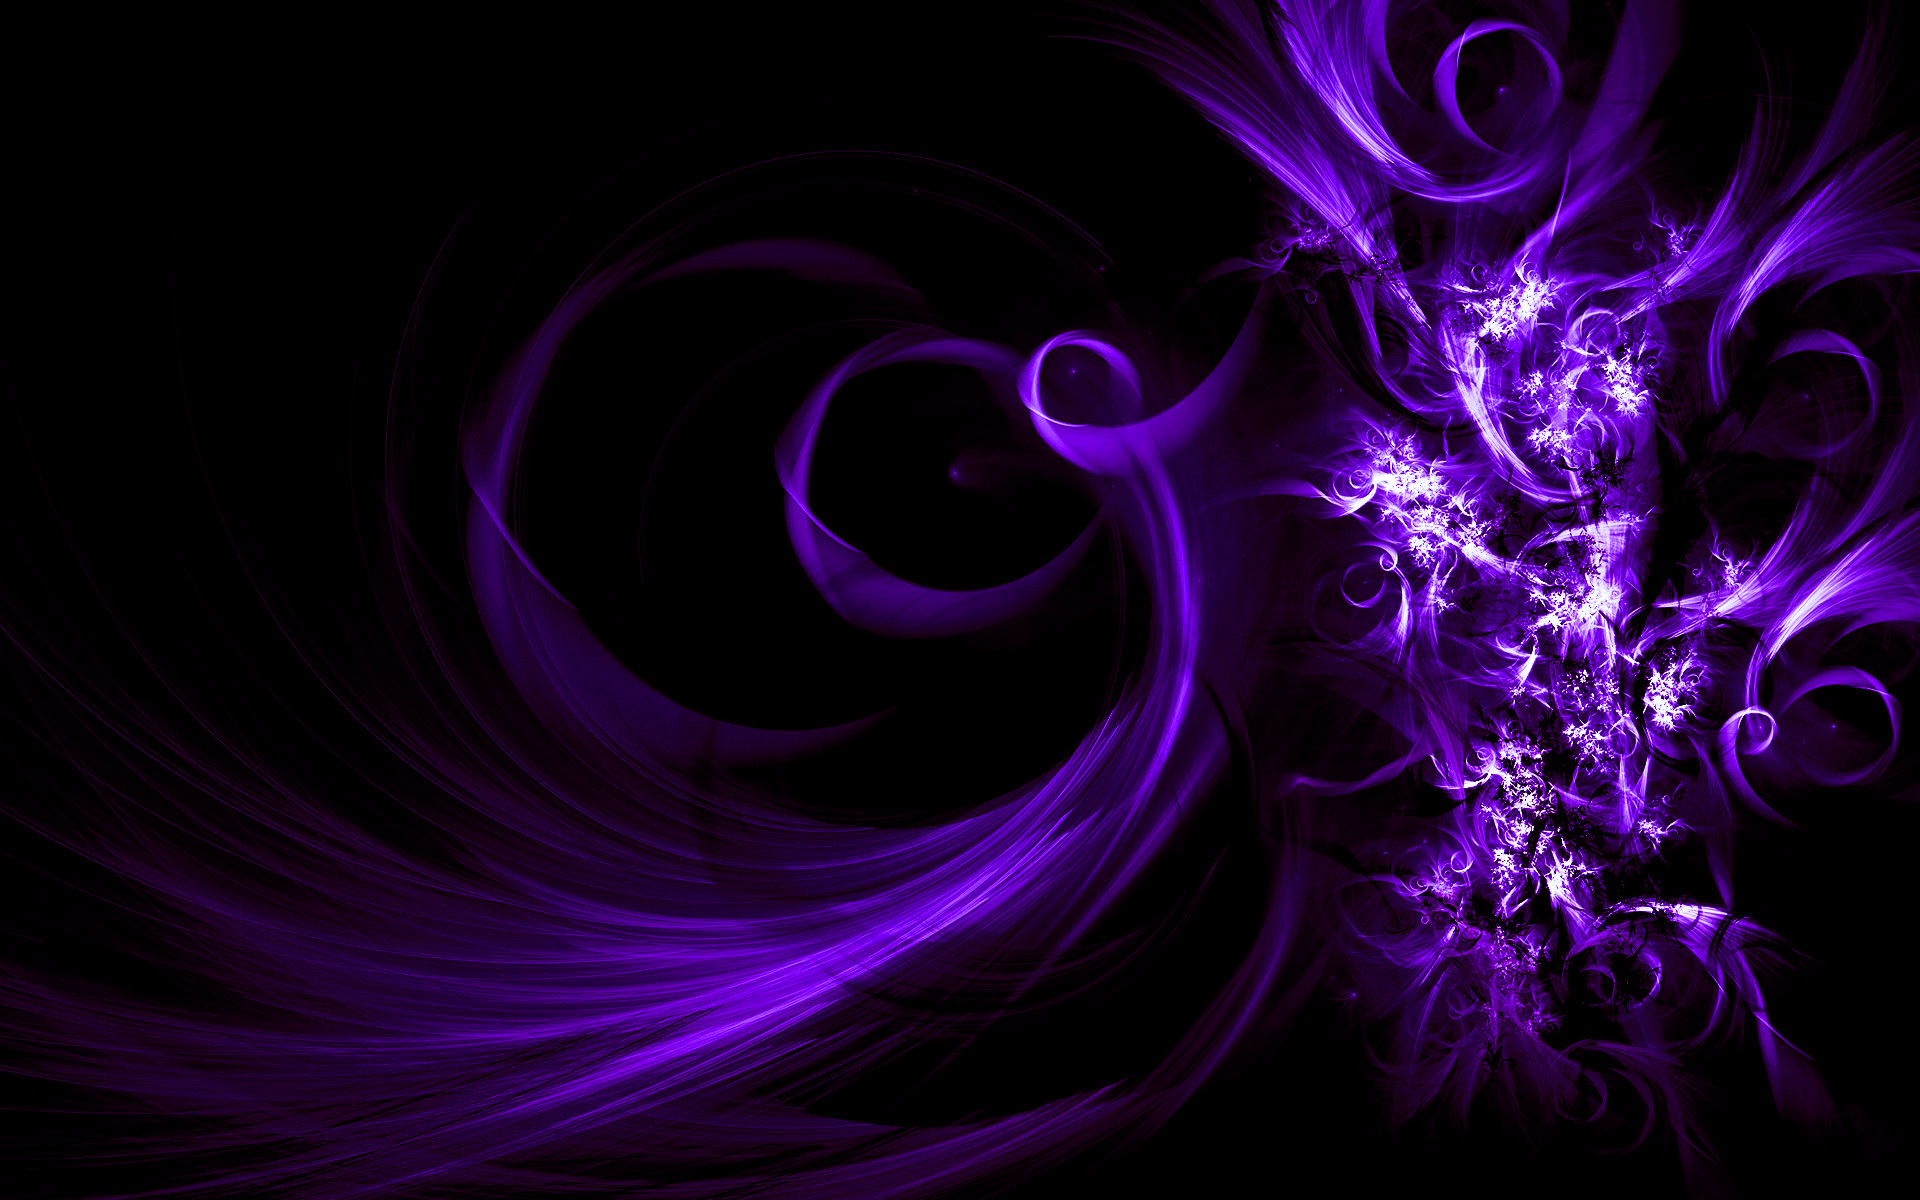  Purple  Backgrounds  Free Download PixelsTalk Net